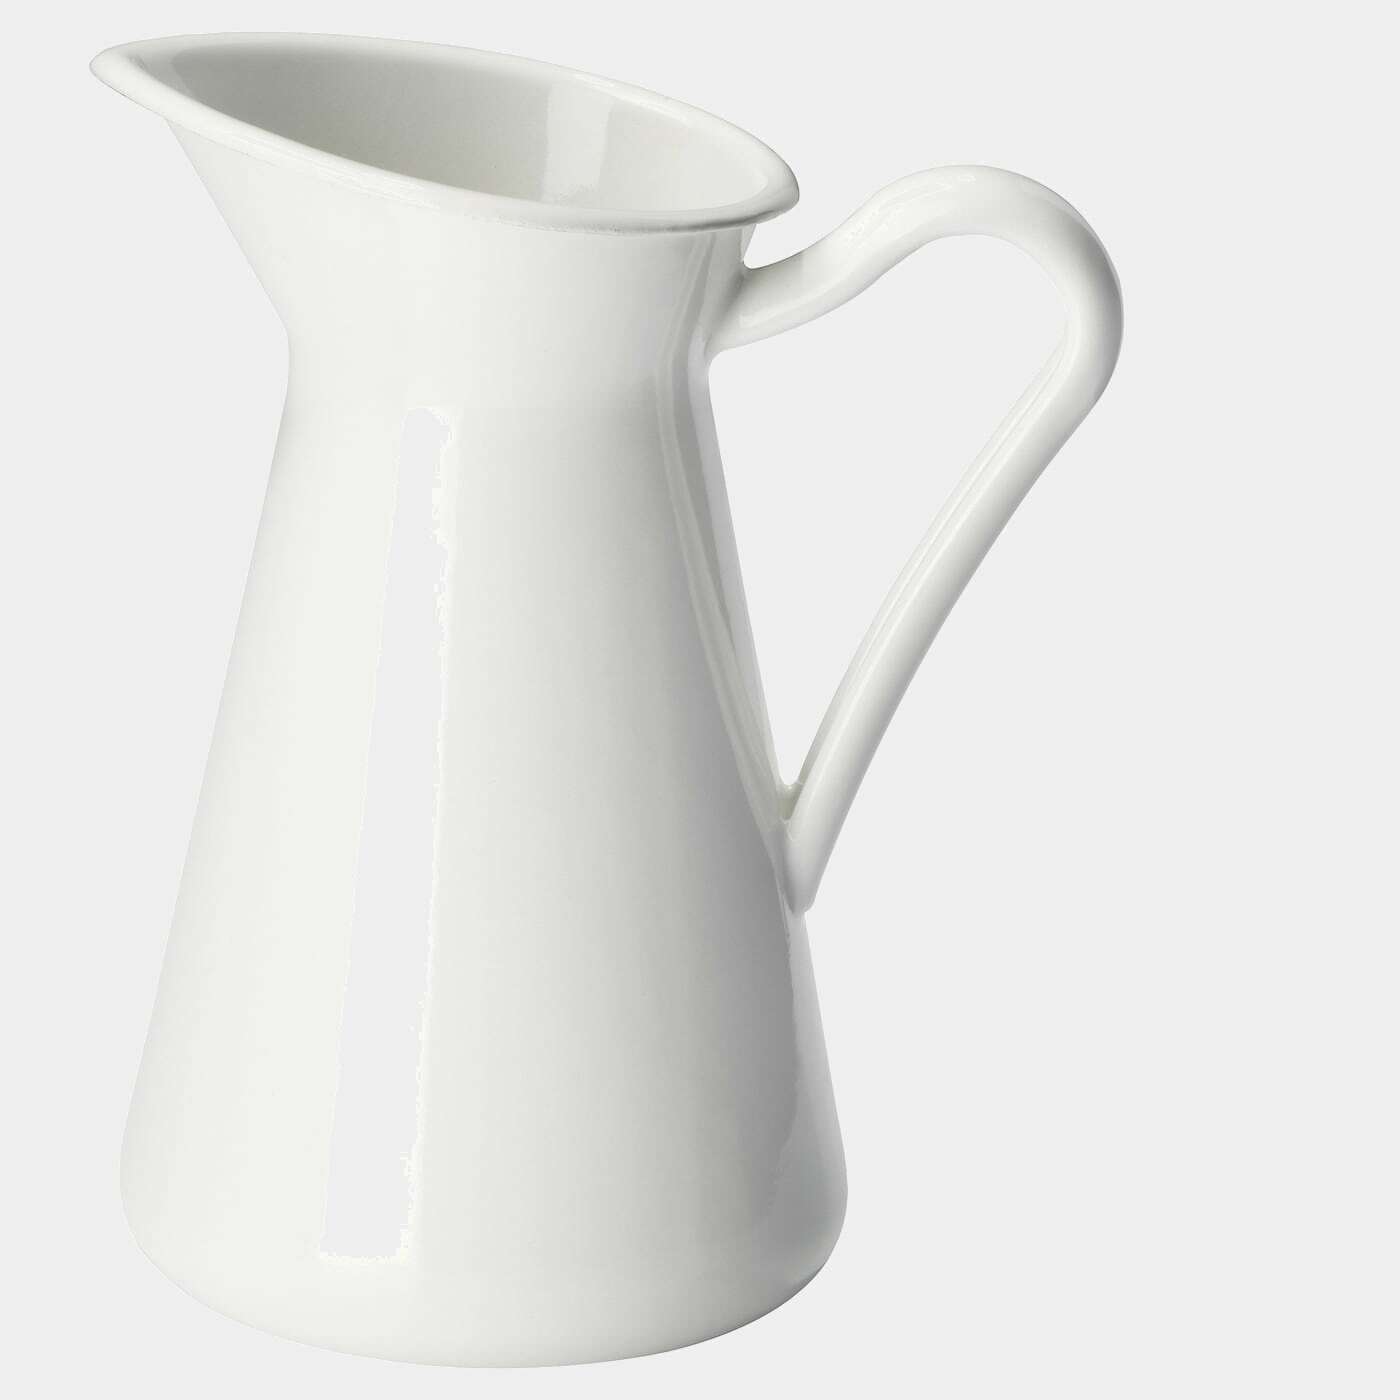 SOCKERÄRT Vase  - Vasen - Dekoration Ideen für dein Zuhause von Home Trends. Dekoration Trends von Social Media Influencer für dein Skandi Zuhause.